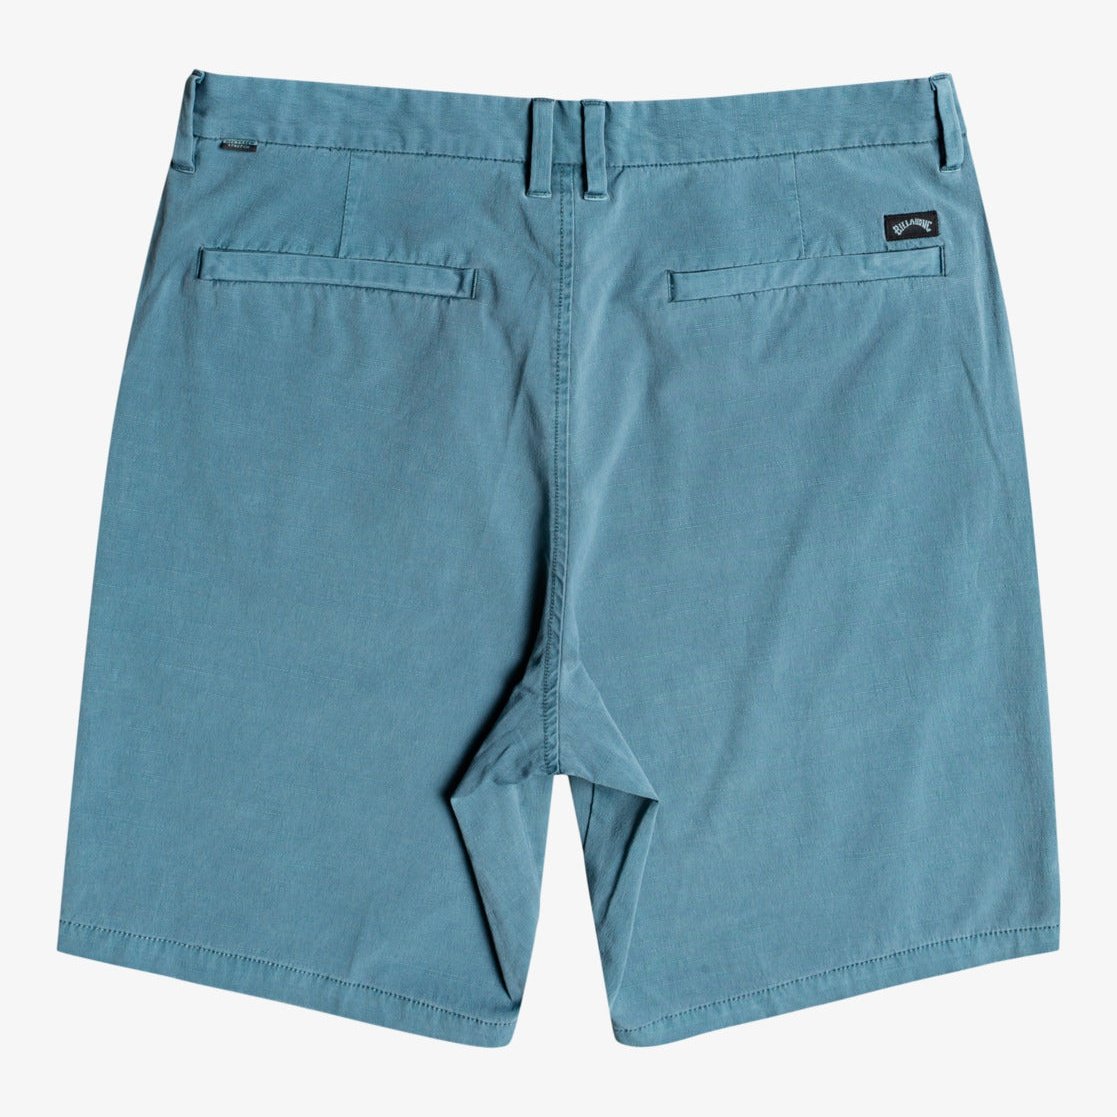 New Order - Hybrid Shorts for Men